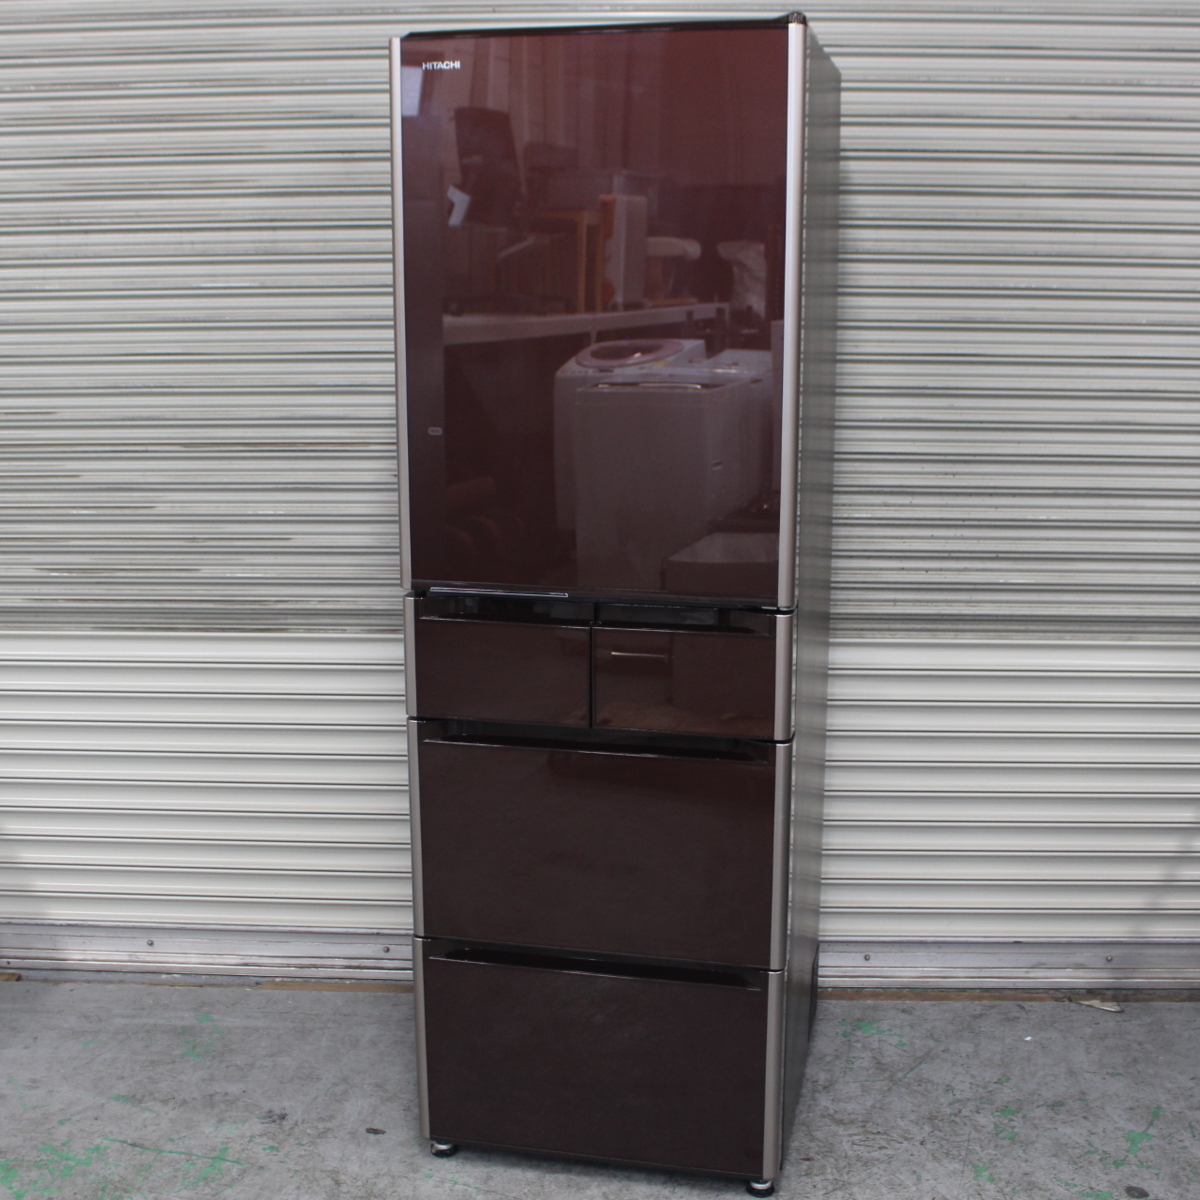 川崎市宮前区にて 日立  冷凍冷蔵庫 R-S4200F 415L 2016年製 を出張買取させて頂きました。